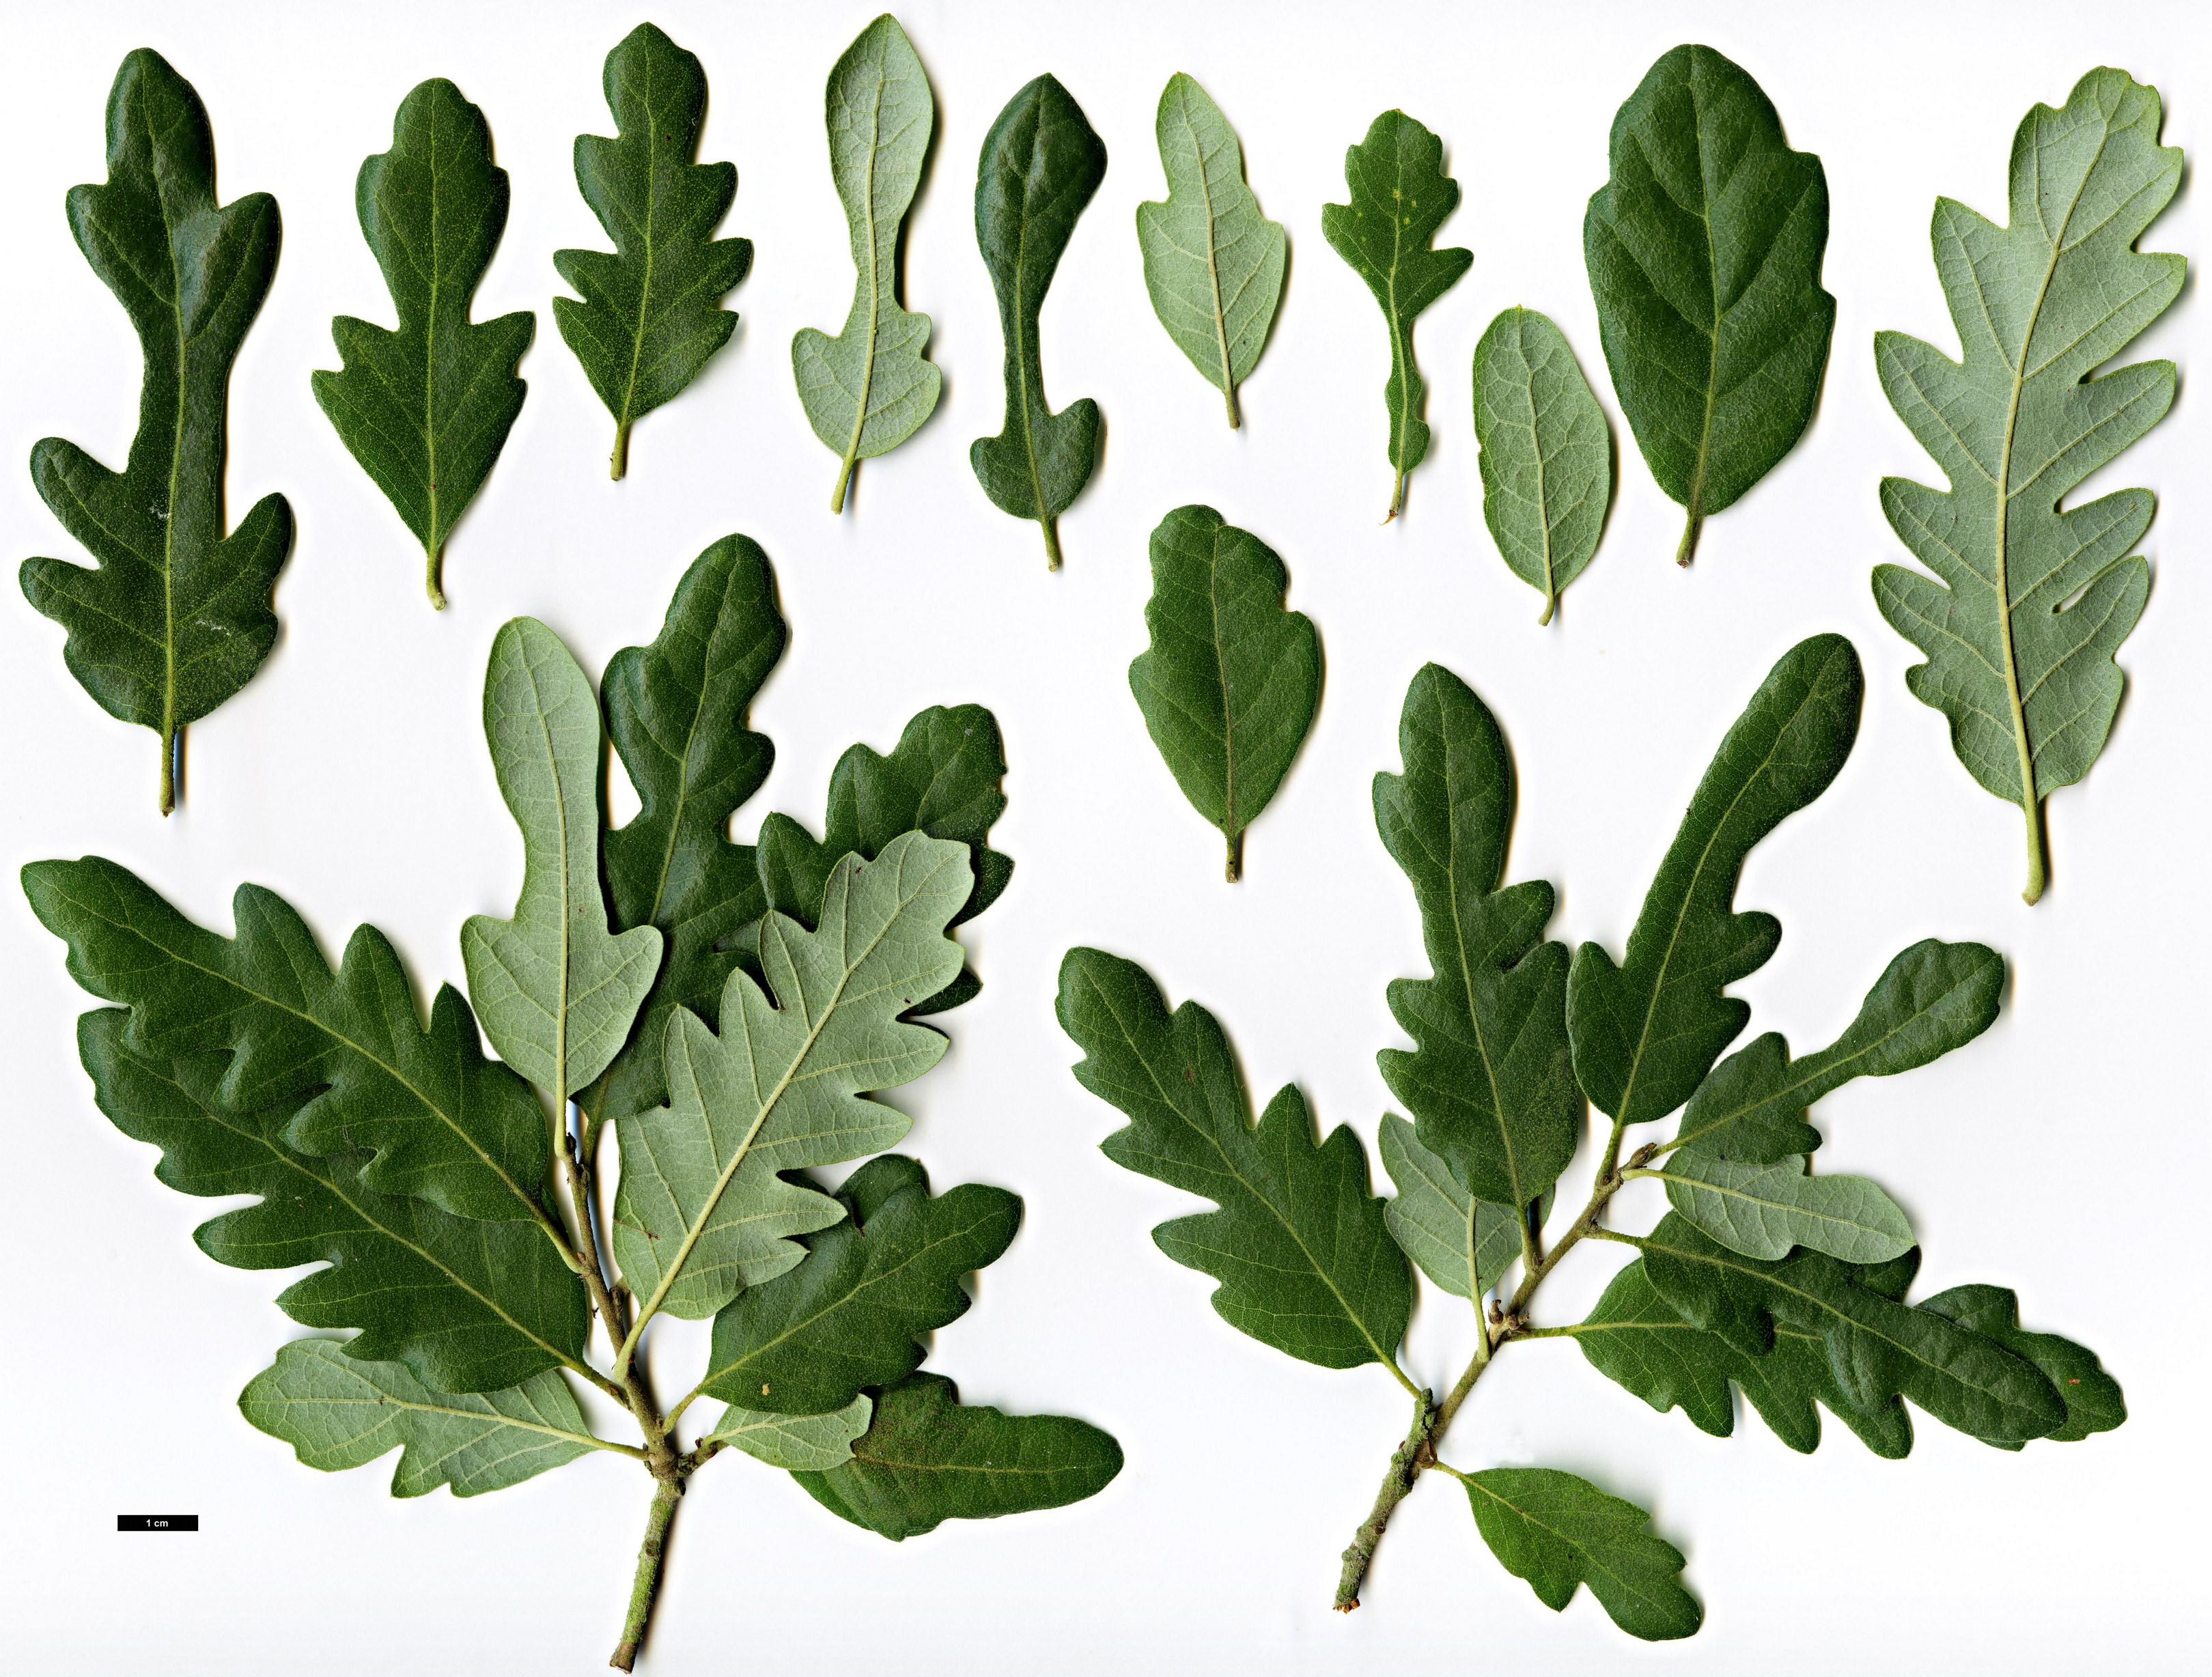 High resolution image: Family: Fagaceae - Genus: Quercus - Taxon: ×crenata - SpeciesSub: 'Diversifolia' (Q.cerris × Q.suber)